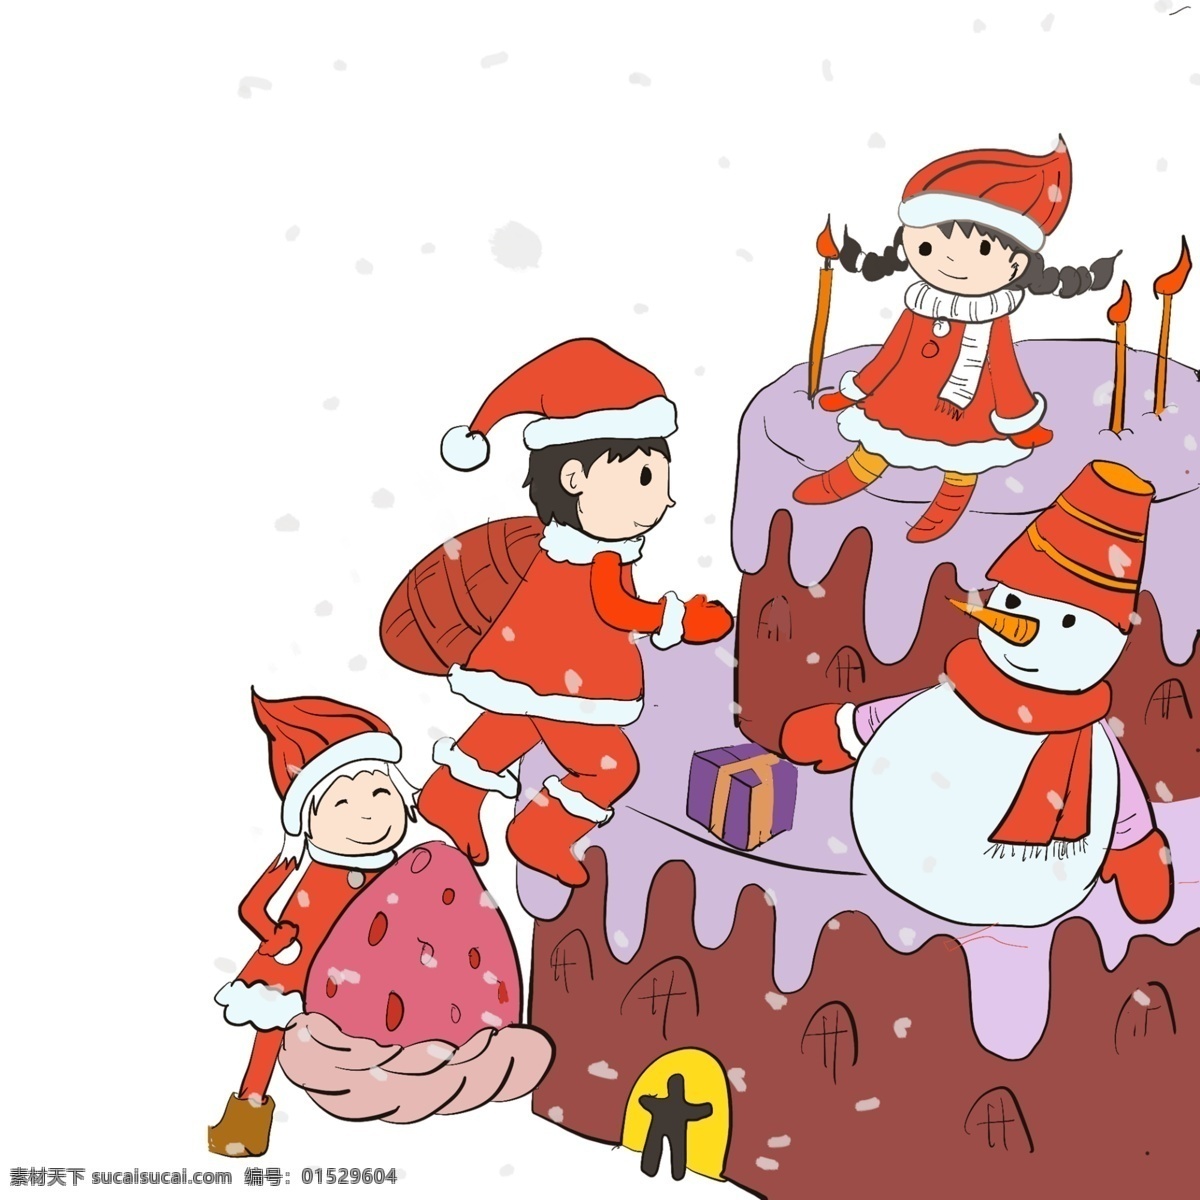 手绘 圣诞节 卡通 人物 圣诞节快乐 高兴 喜悦 节日 礼物 孩子 蛋糕 庆祝 雪人 插画 吉祥